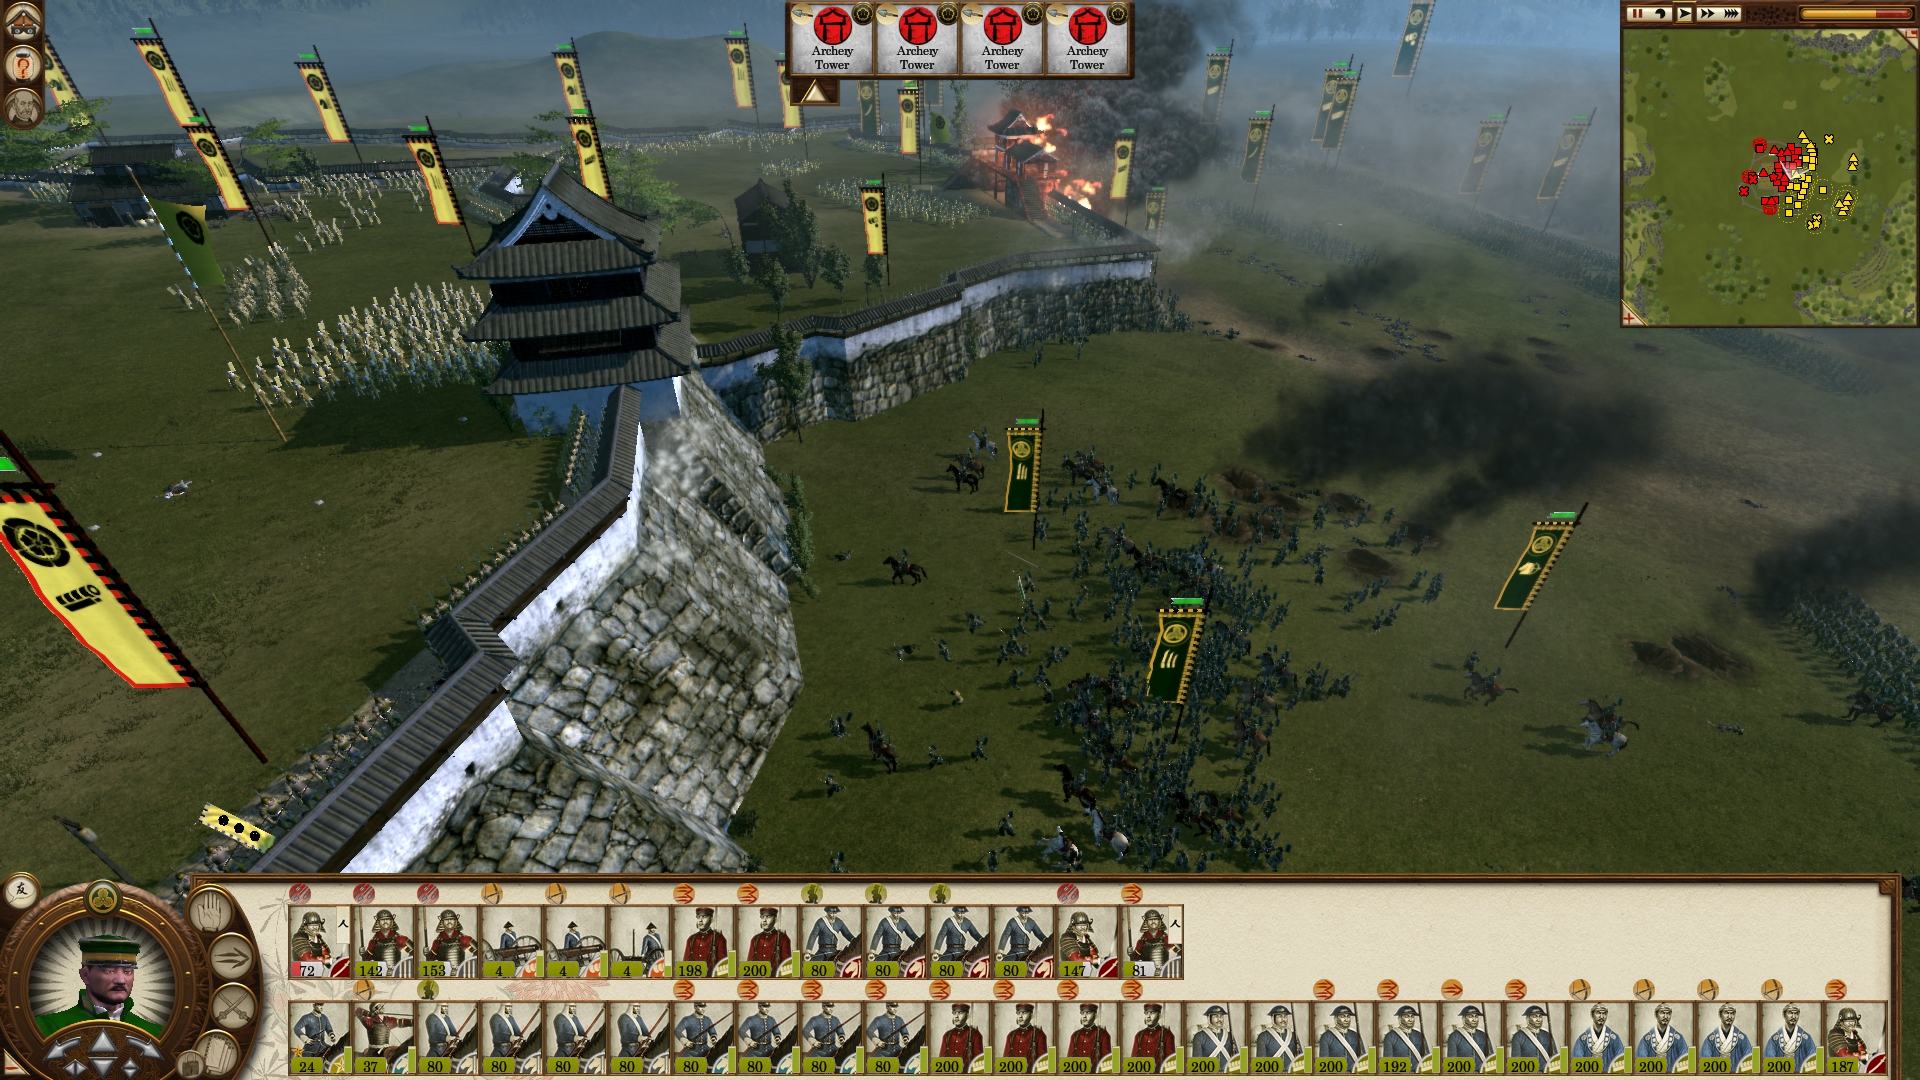 Shogun: Total War Backgrounds on Wallpapers Vista